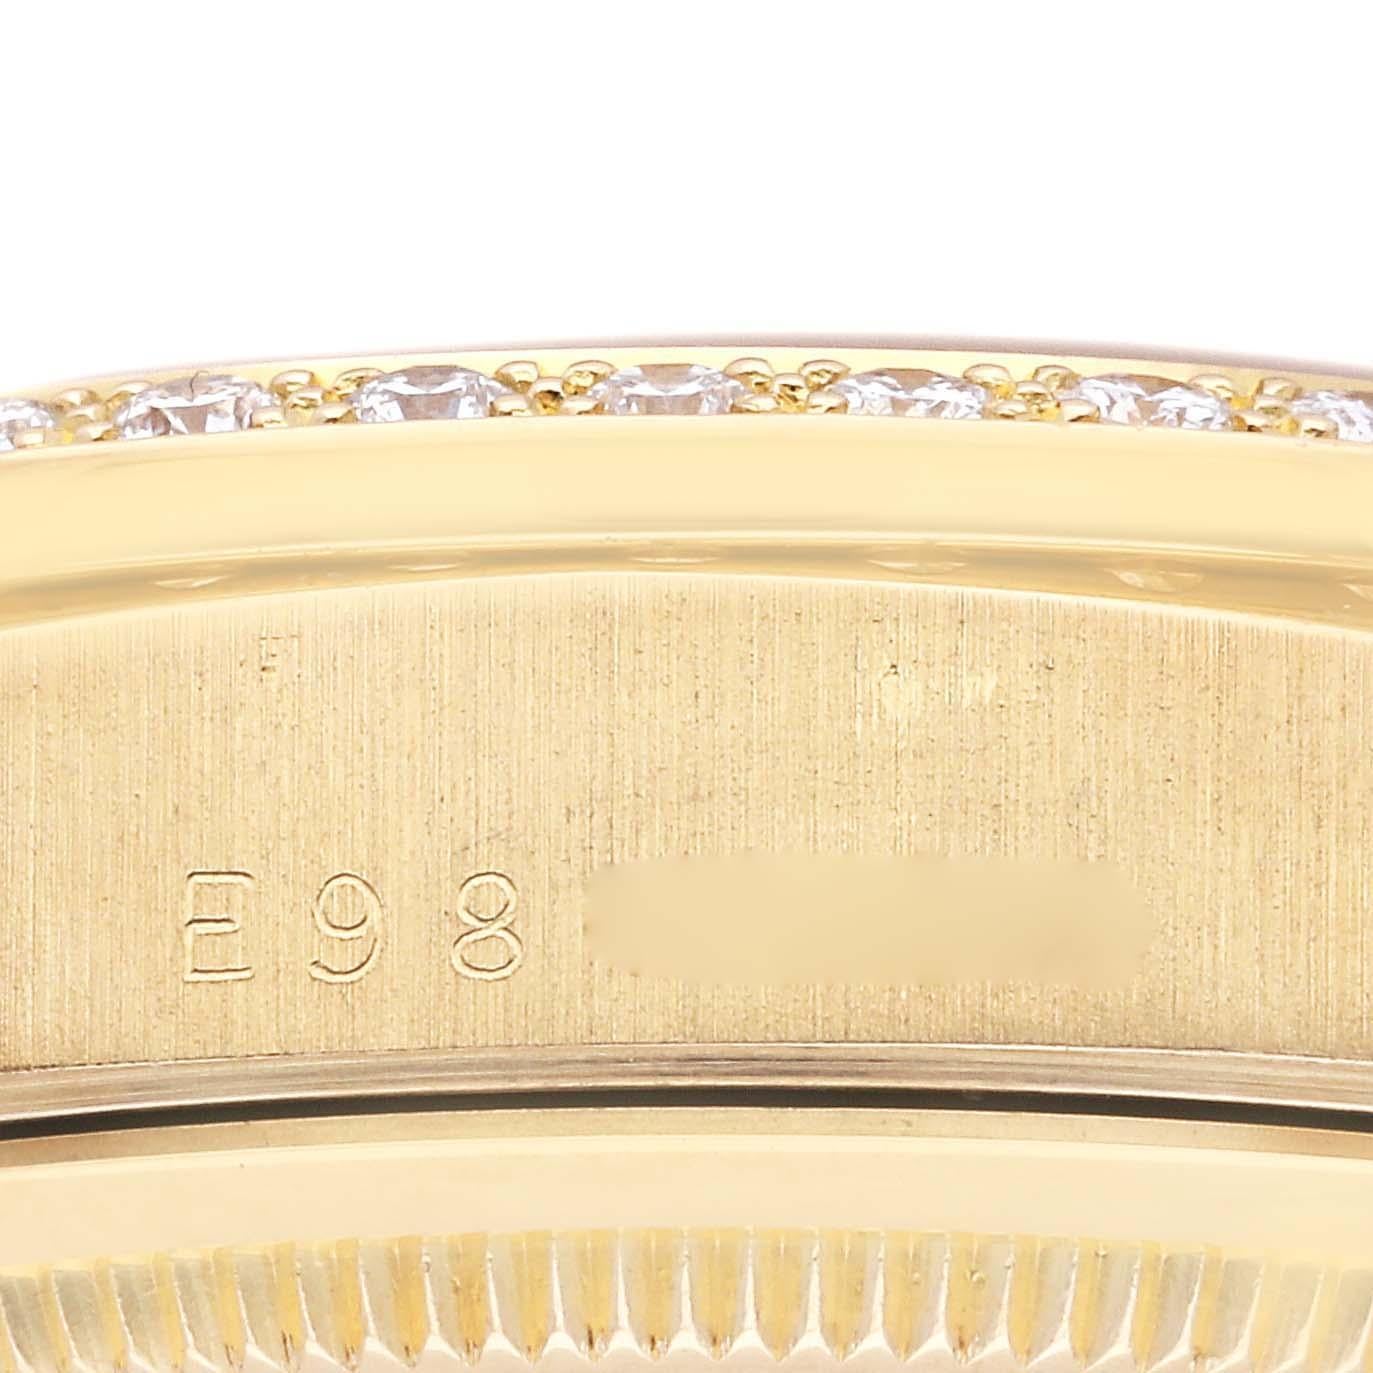 Rolex President Day Date 36mm Yellow Gold Diamond Mens Watch 18348. Mouvement à remontage automatique certifié chronomètre. Boîtier en or jaune 18 carats de 36 mm de diamètre. Logo Rolex sur une couronne. Lunette originale d'usine Rolex en or jaune